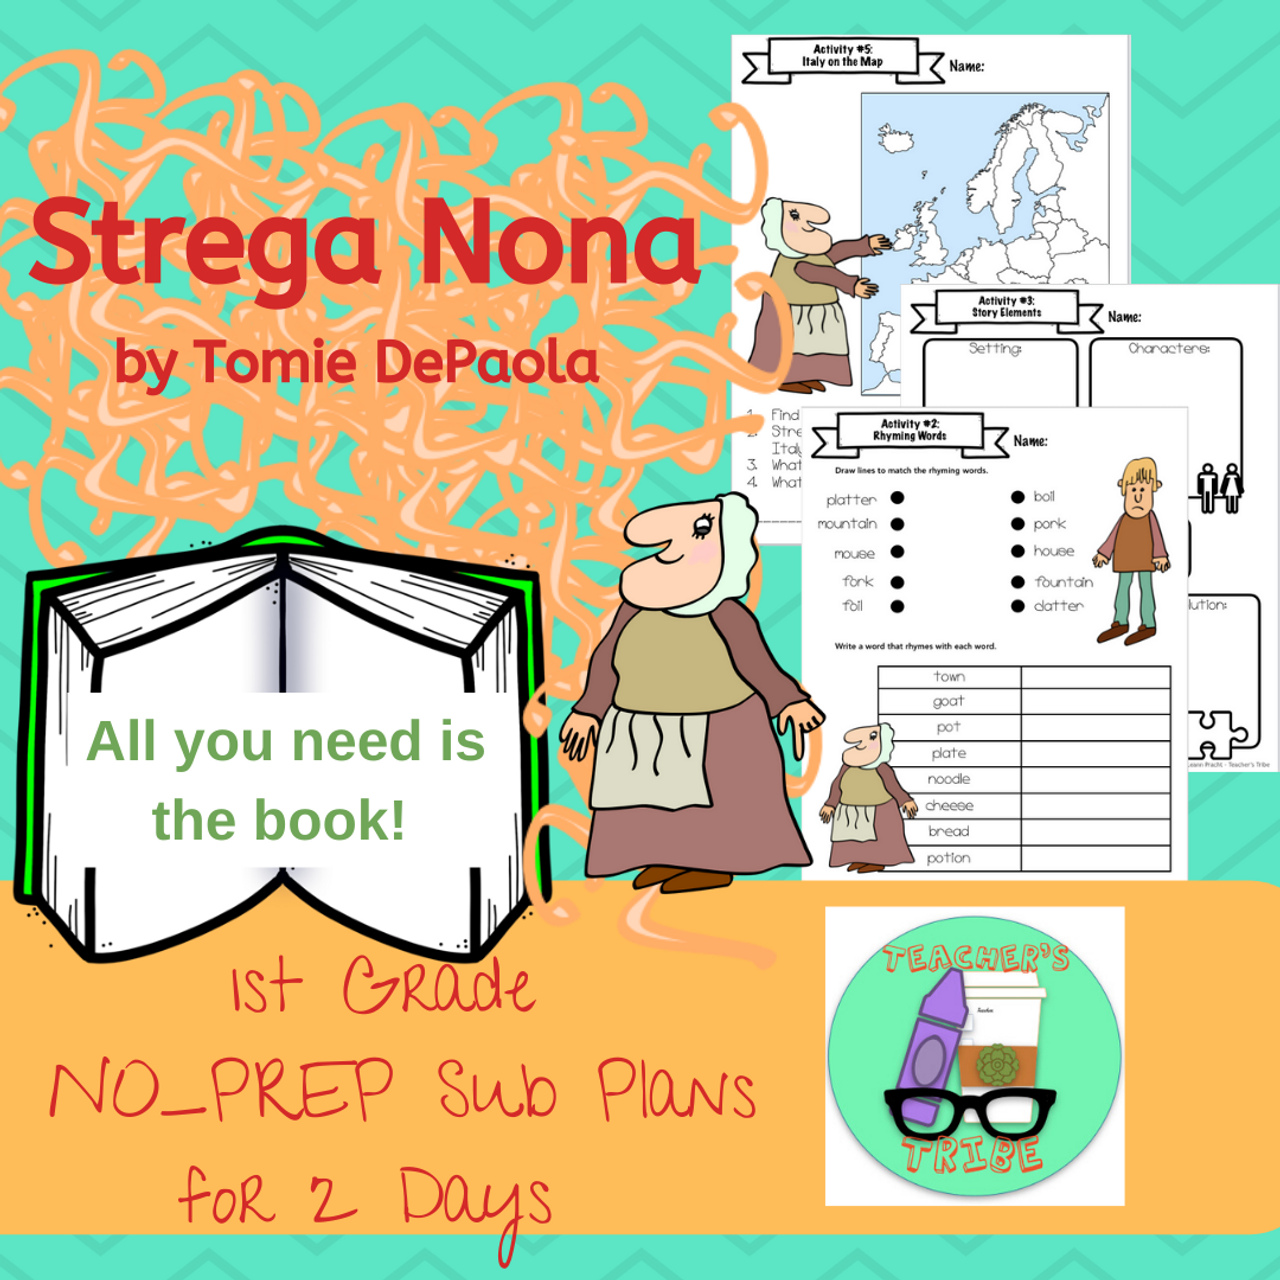 Strega Nona NO-PREP 1st Grade Sub Plans (2 Days)